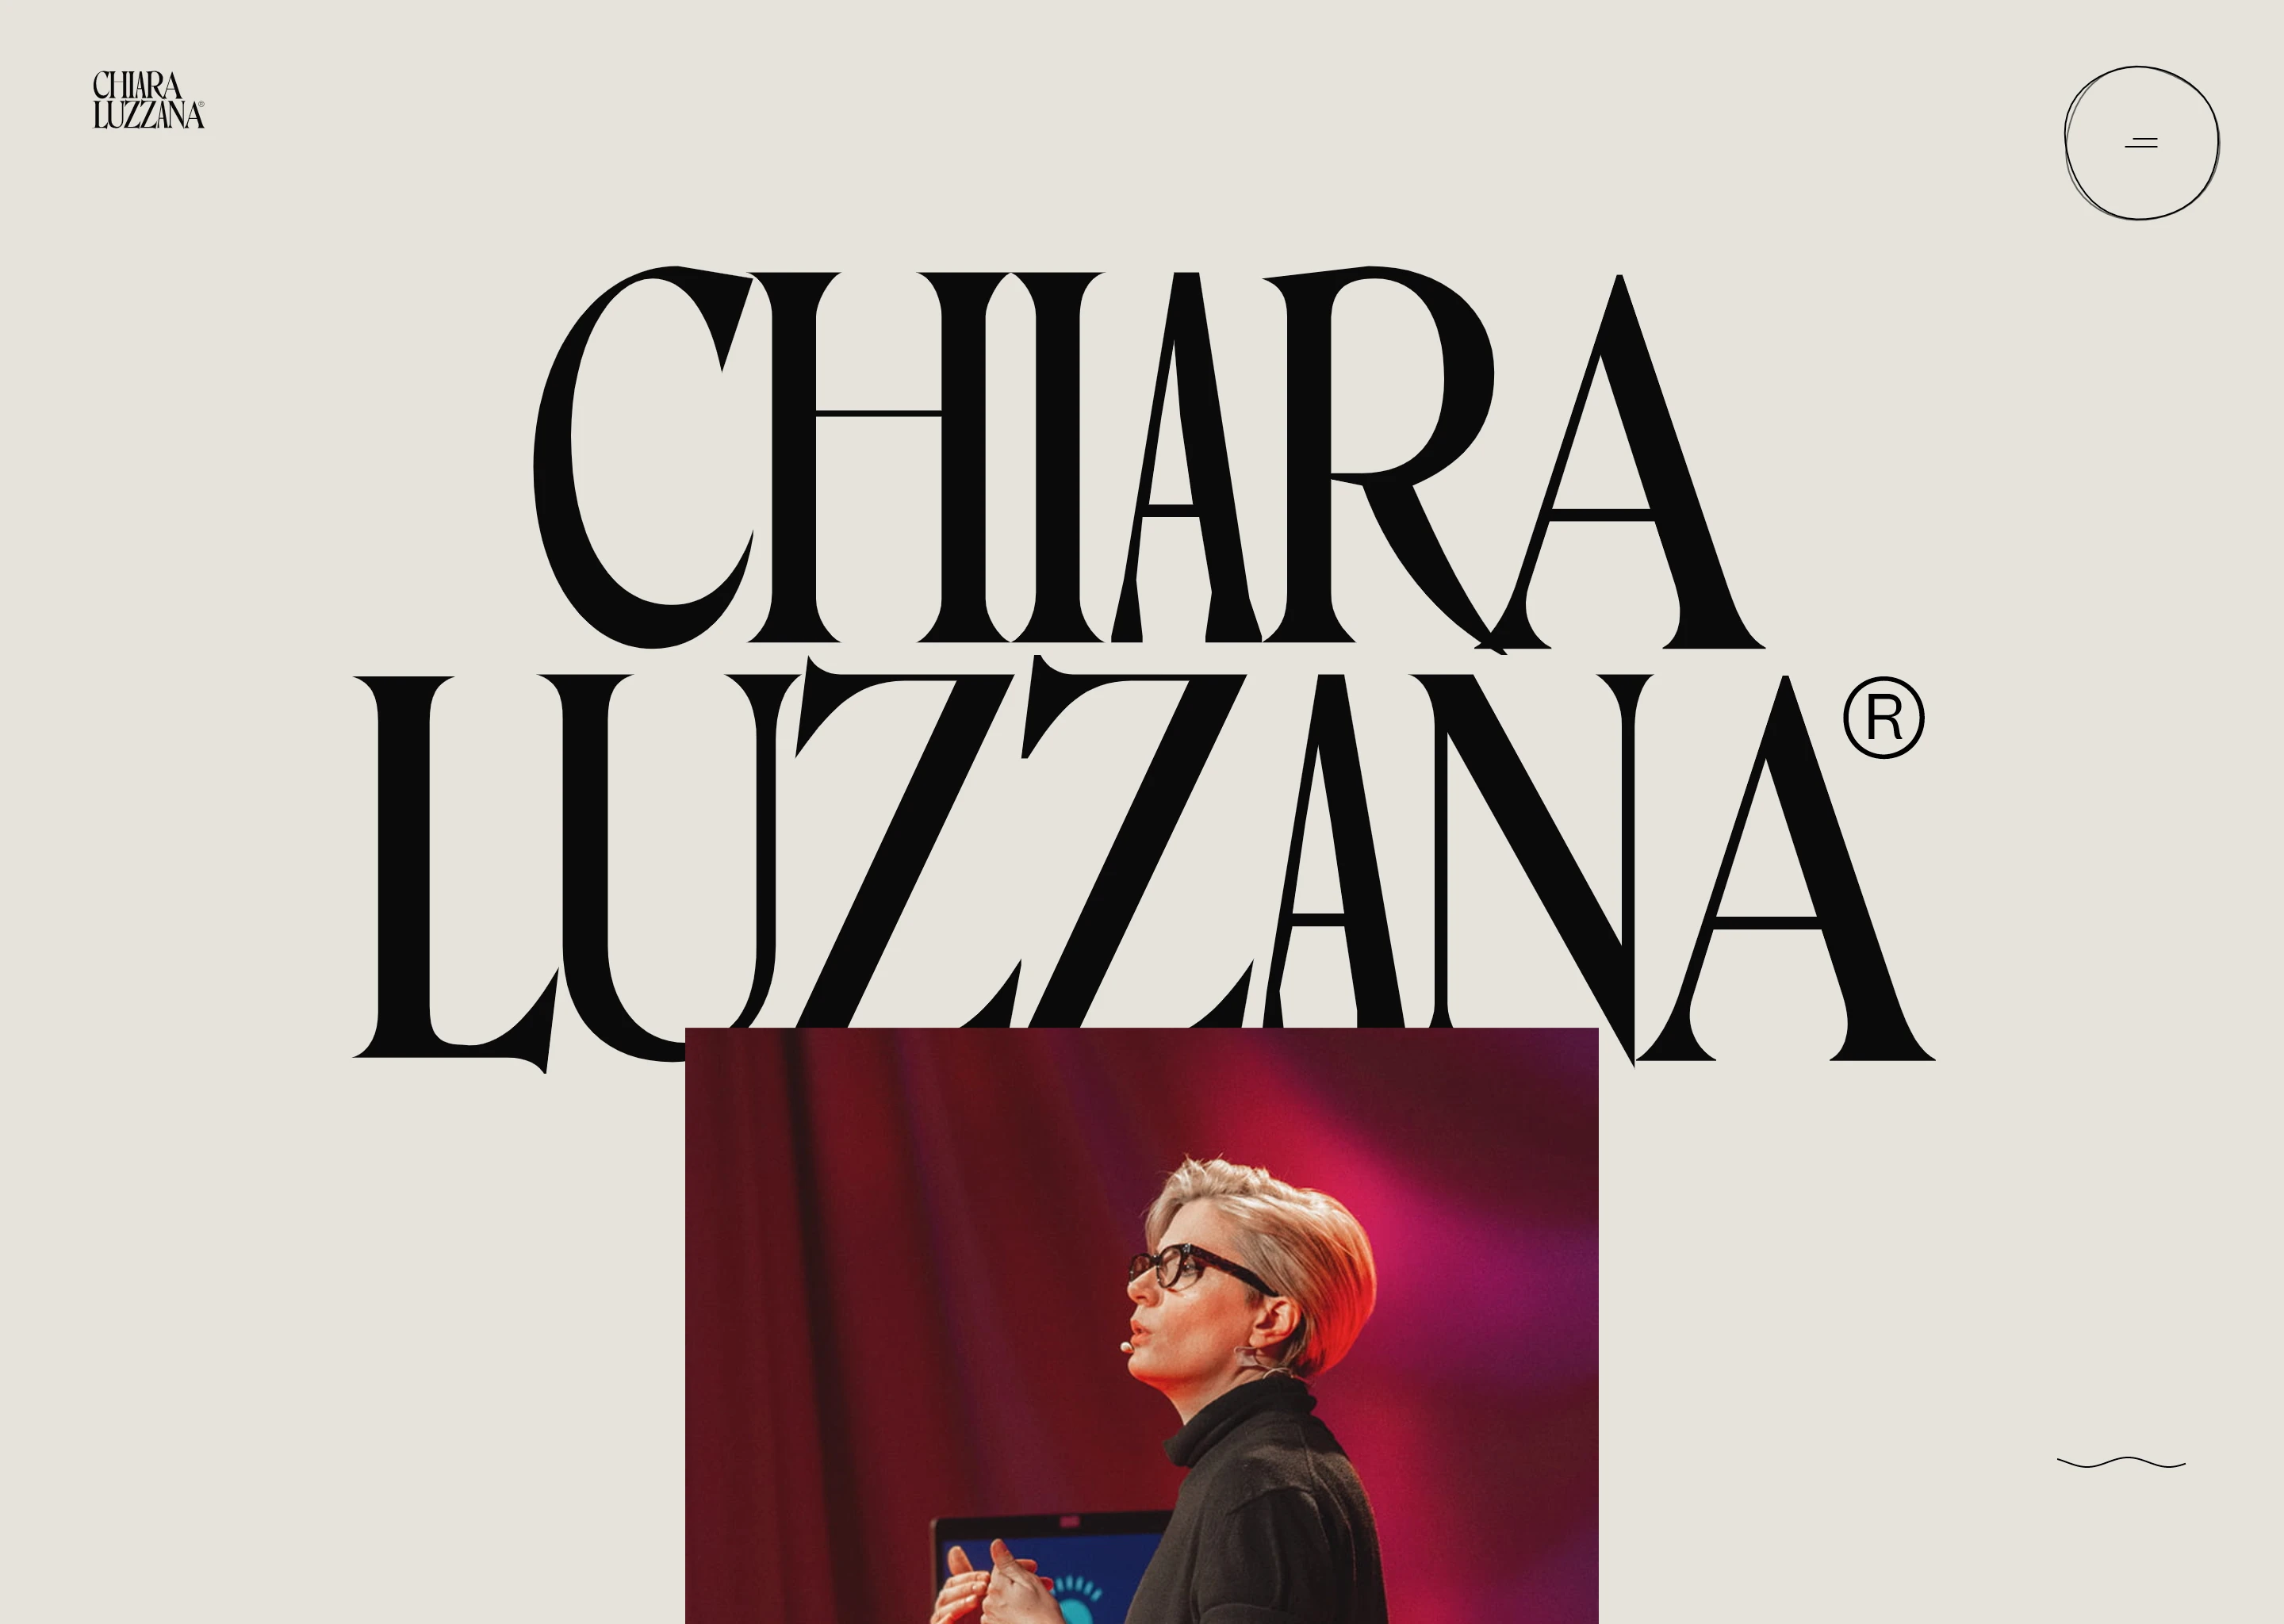 Chiara Luzzana